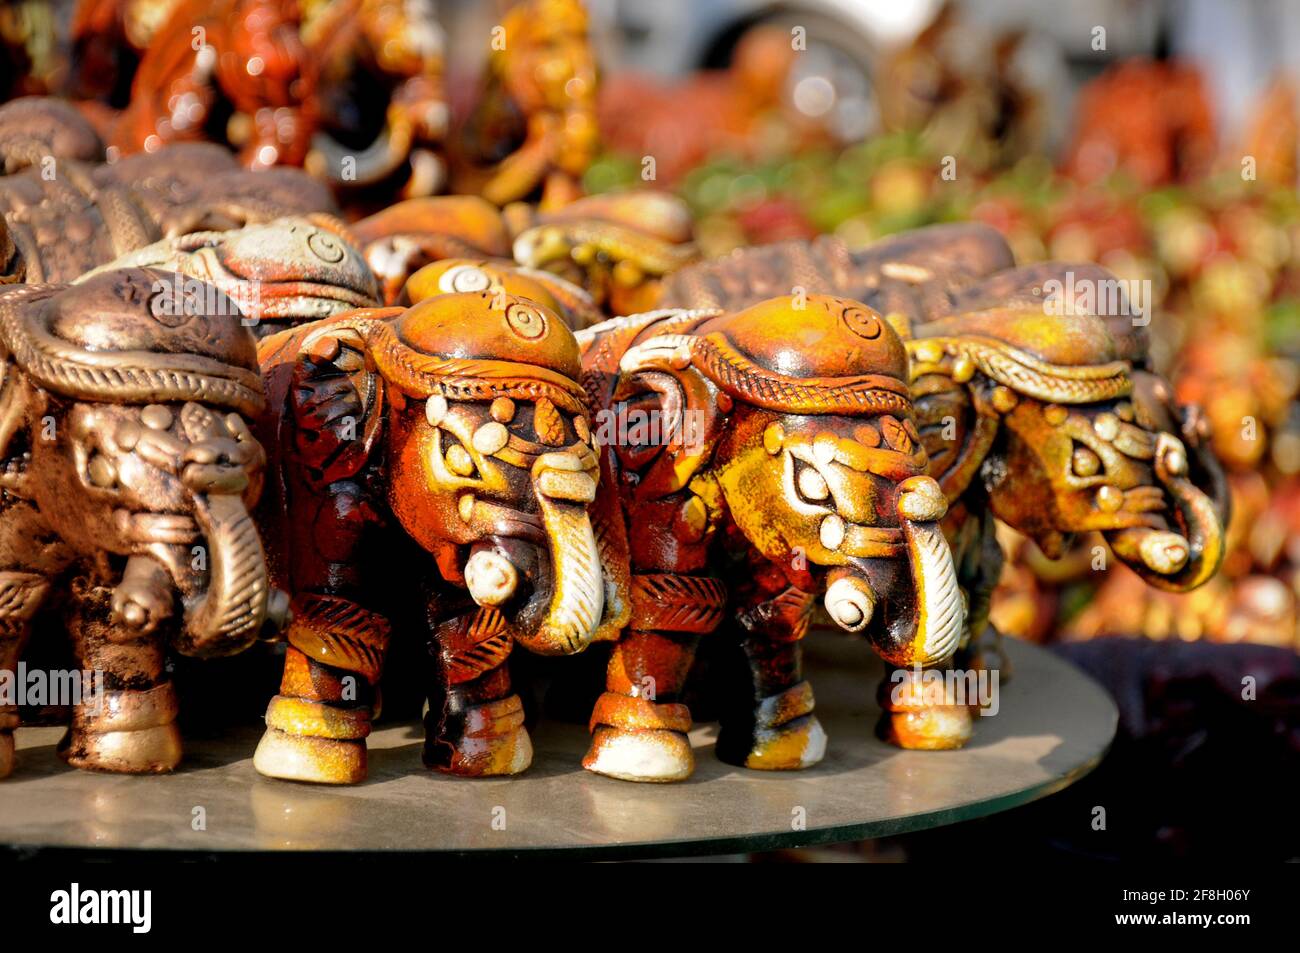 Elefante di argilla, decorazione artigianale tradizionale di argilla, ceramica colorata decorativa, giocattolo artigianale tradizionale di decorazione di argilla nel mercato indiano Foto Stock